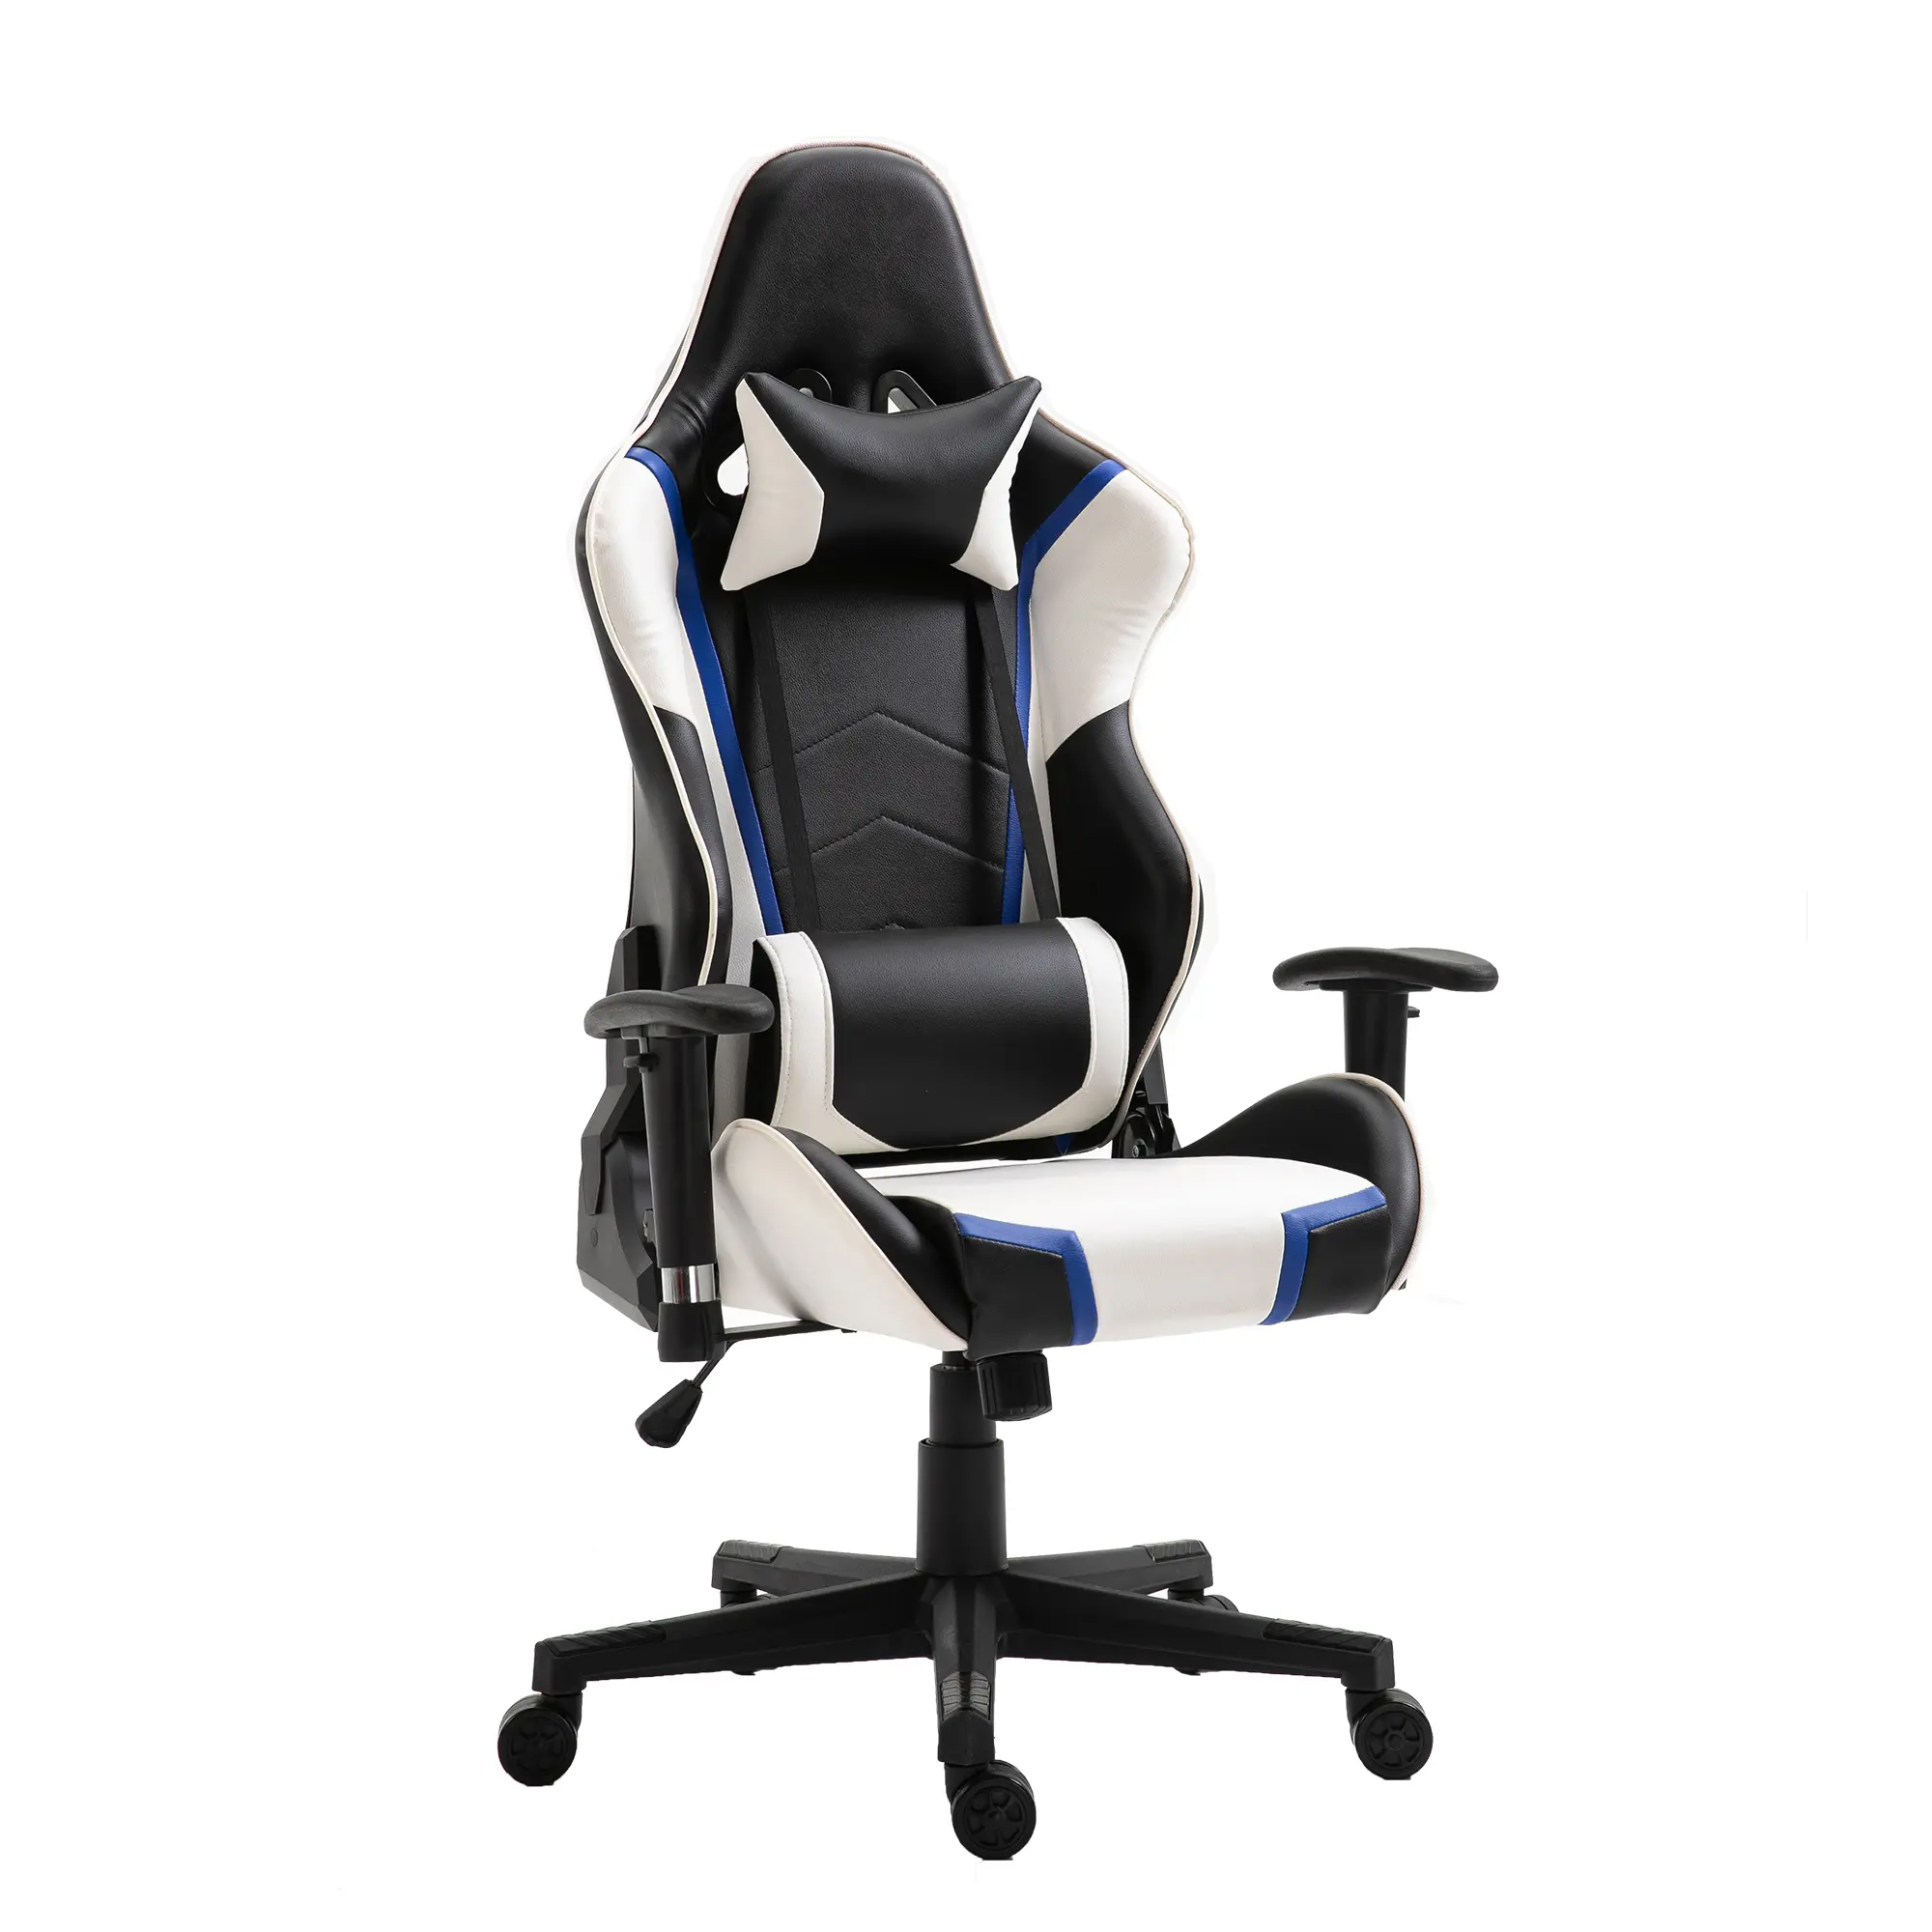 Derfor bør du købe ergonomiske stole til dit kontor